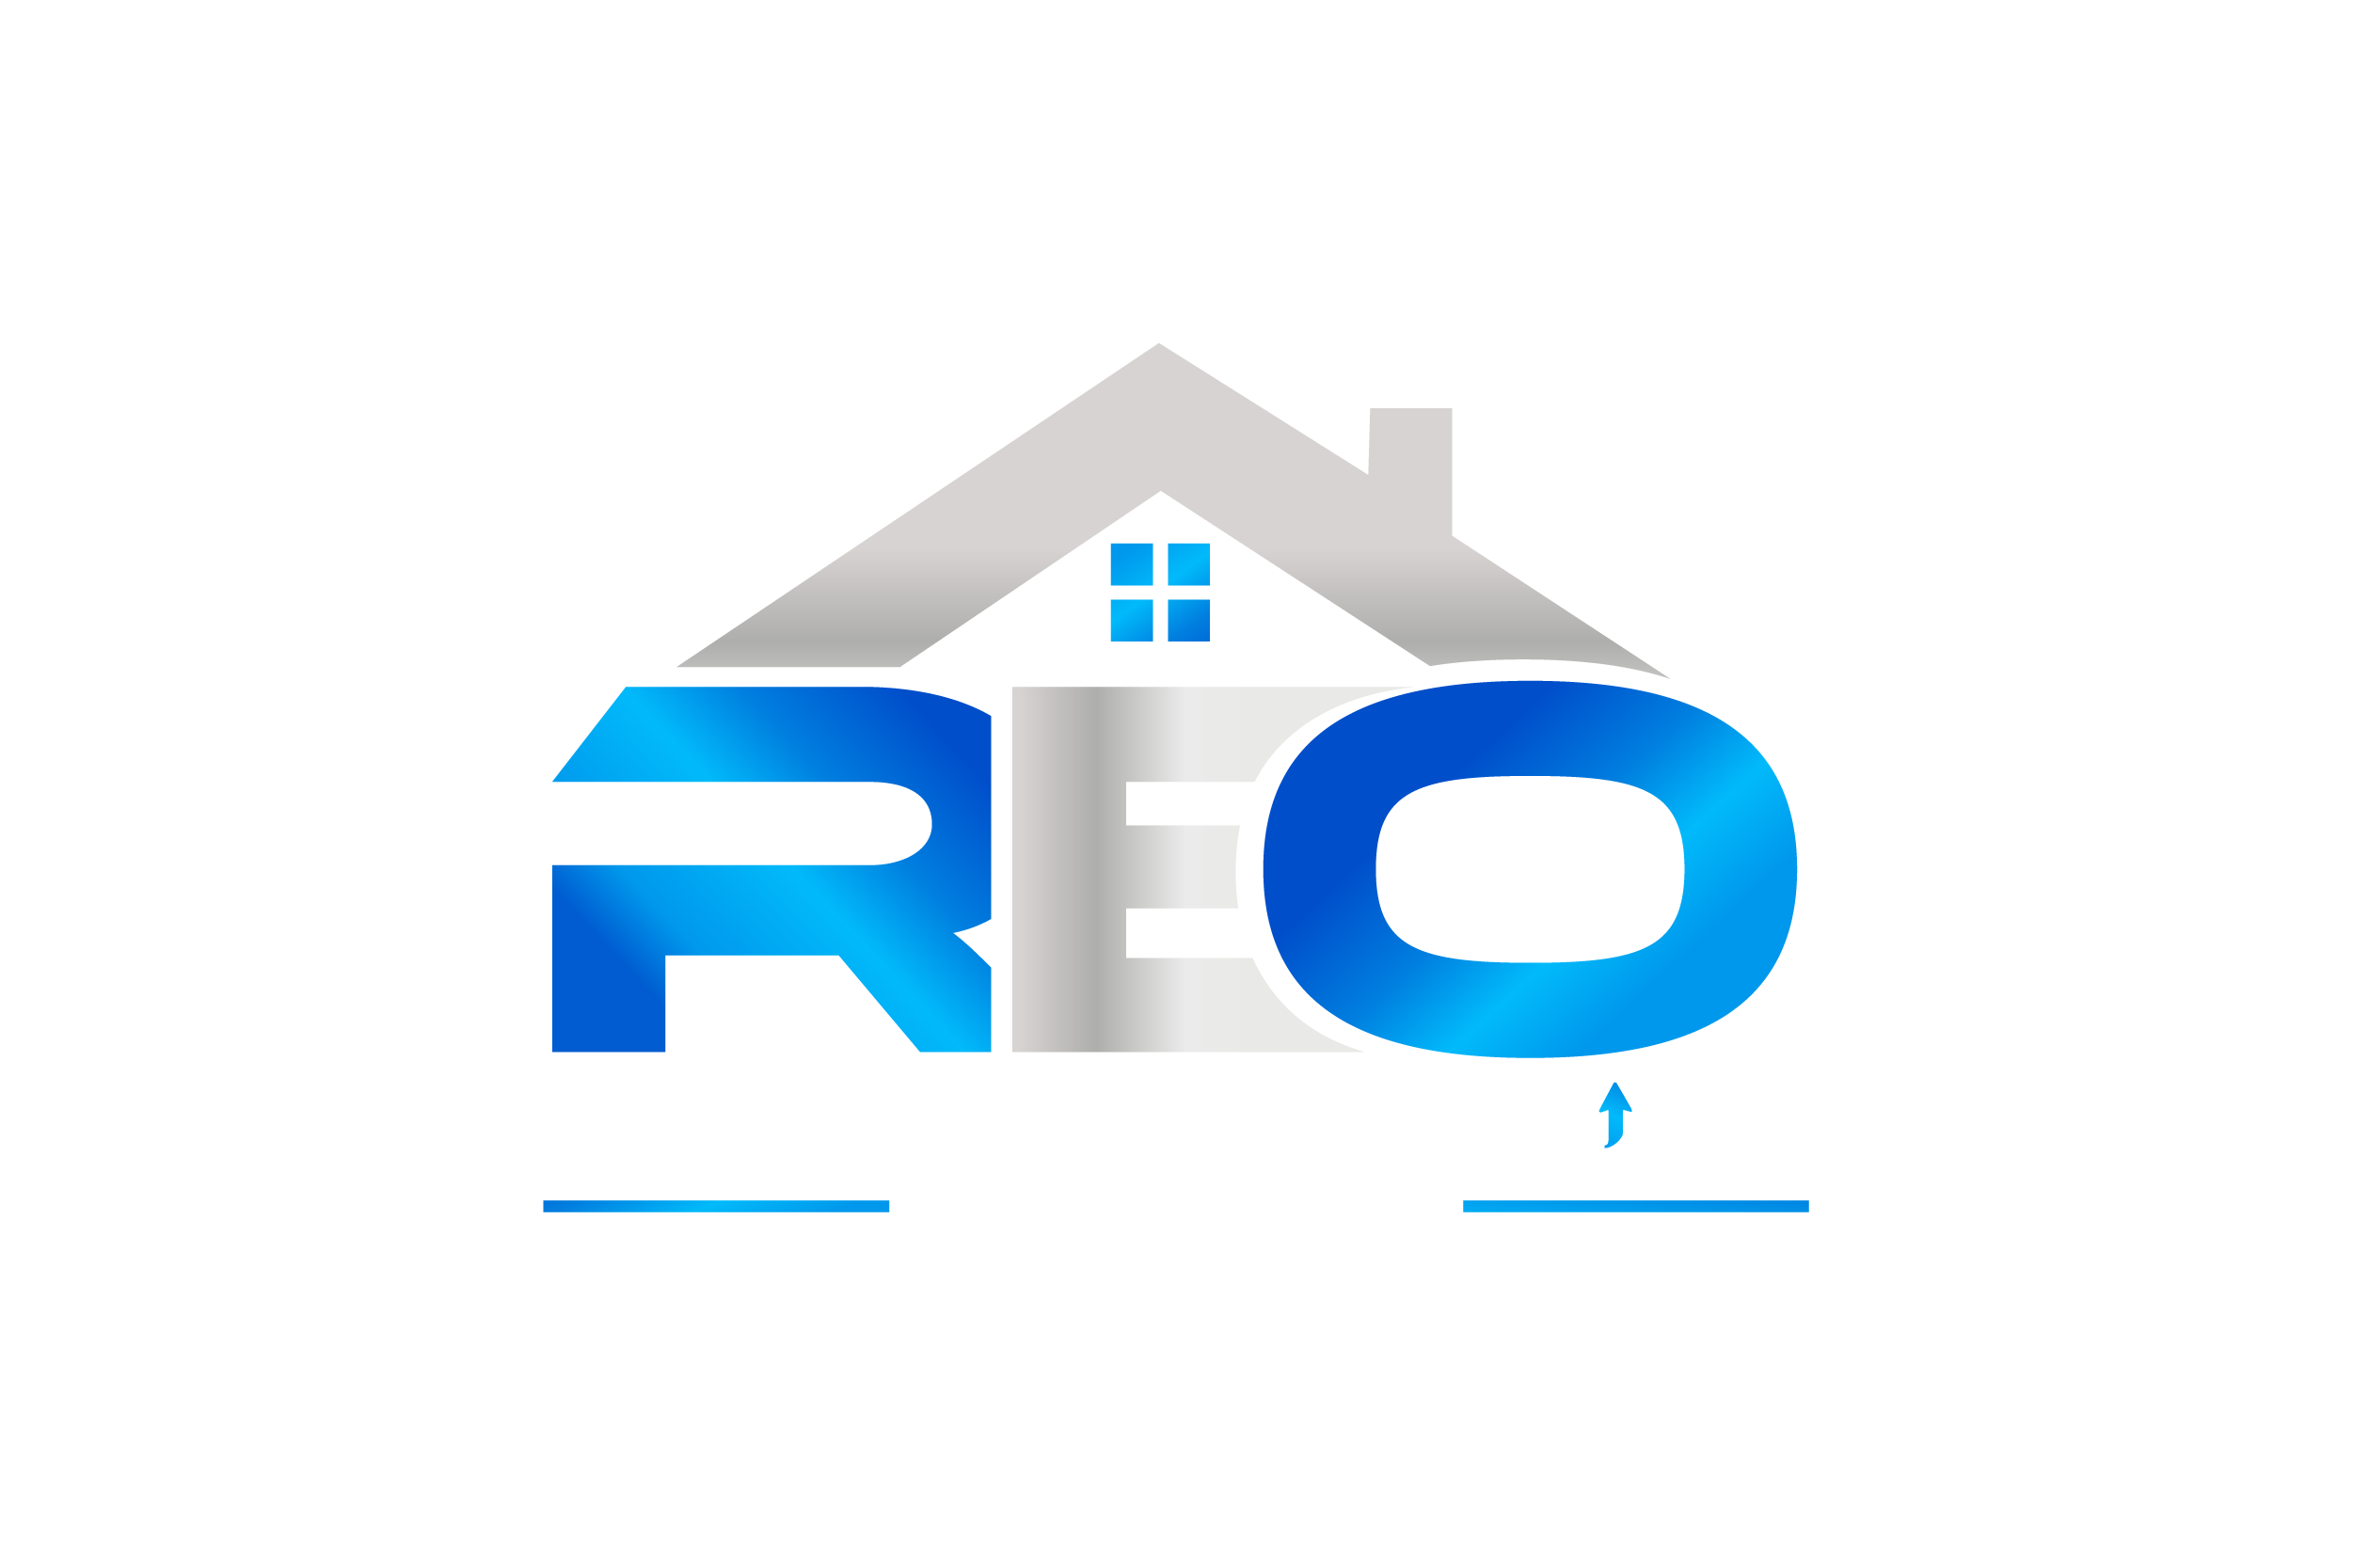 Real Estate Online